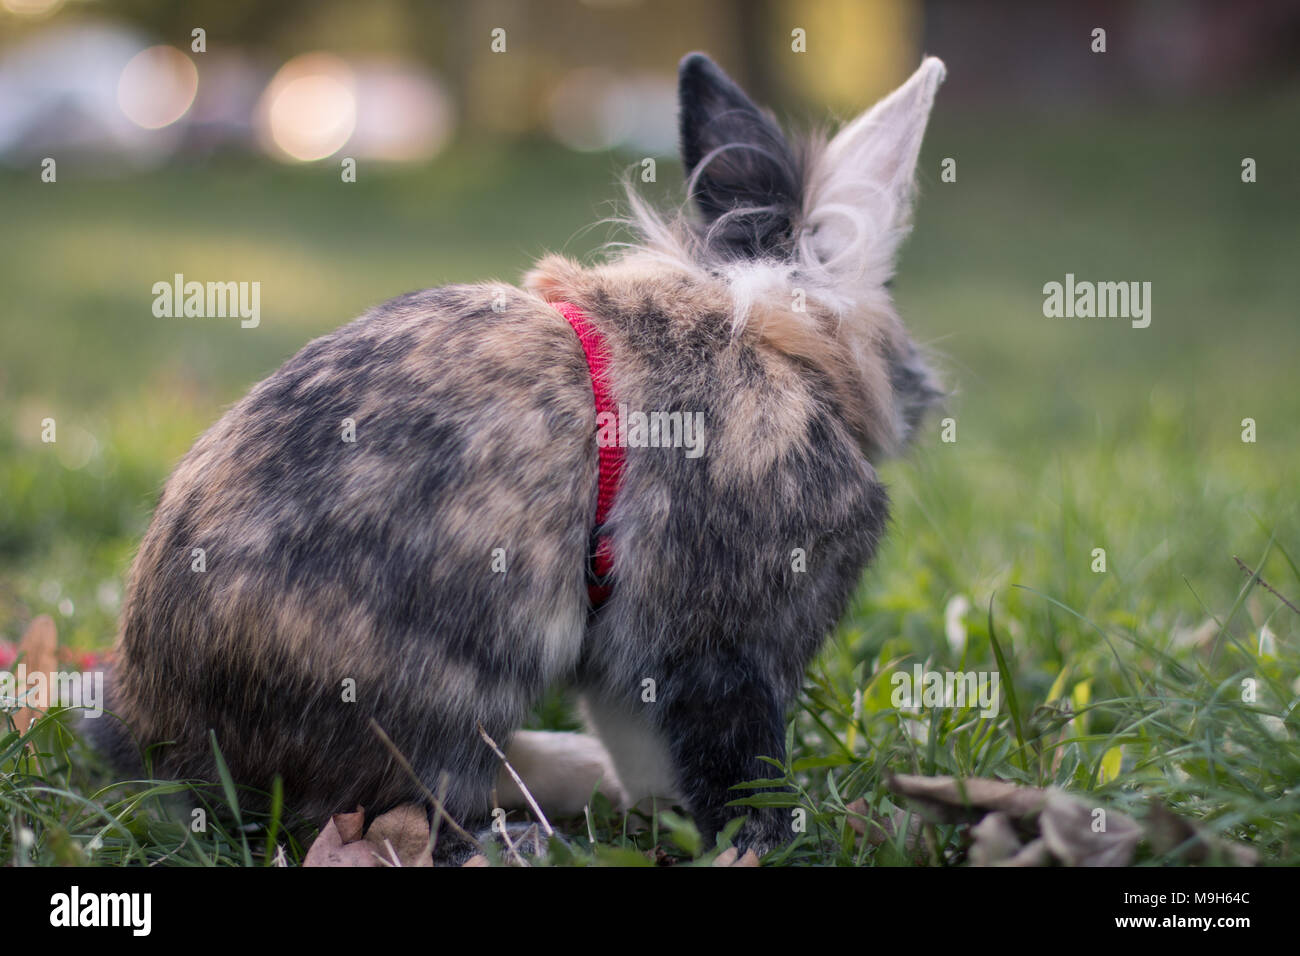 Mignon lapin nain sur la nature, de l'arrière Banque D'Images